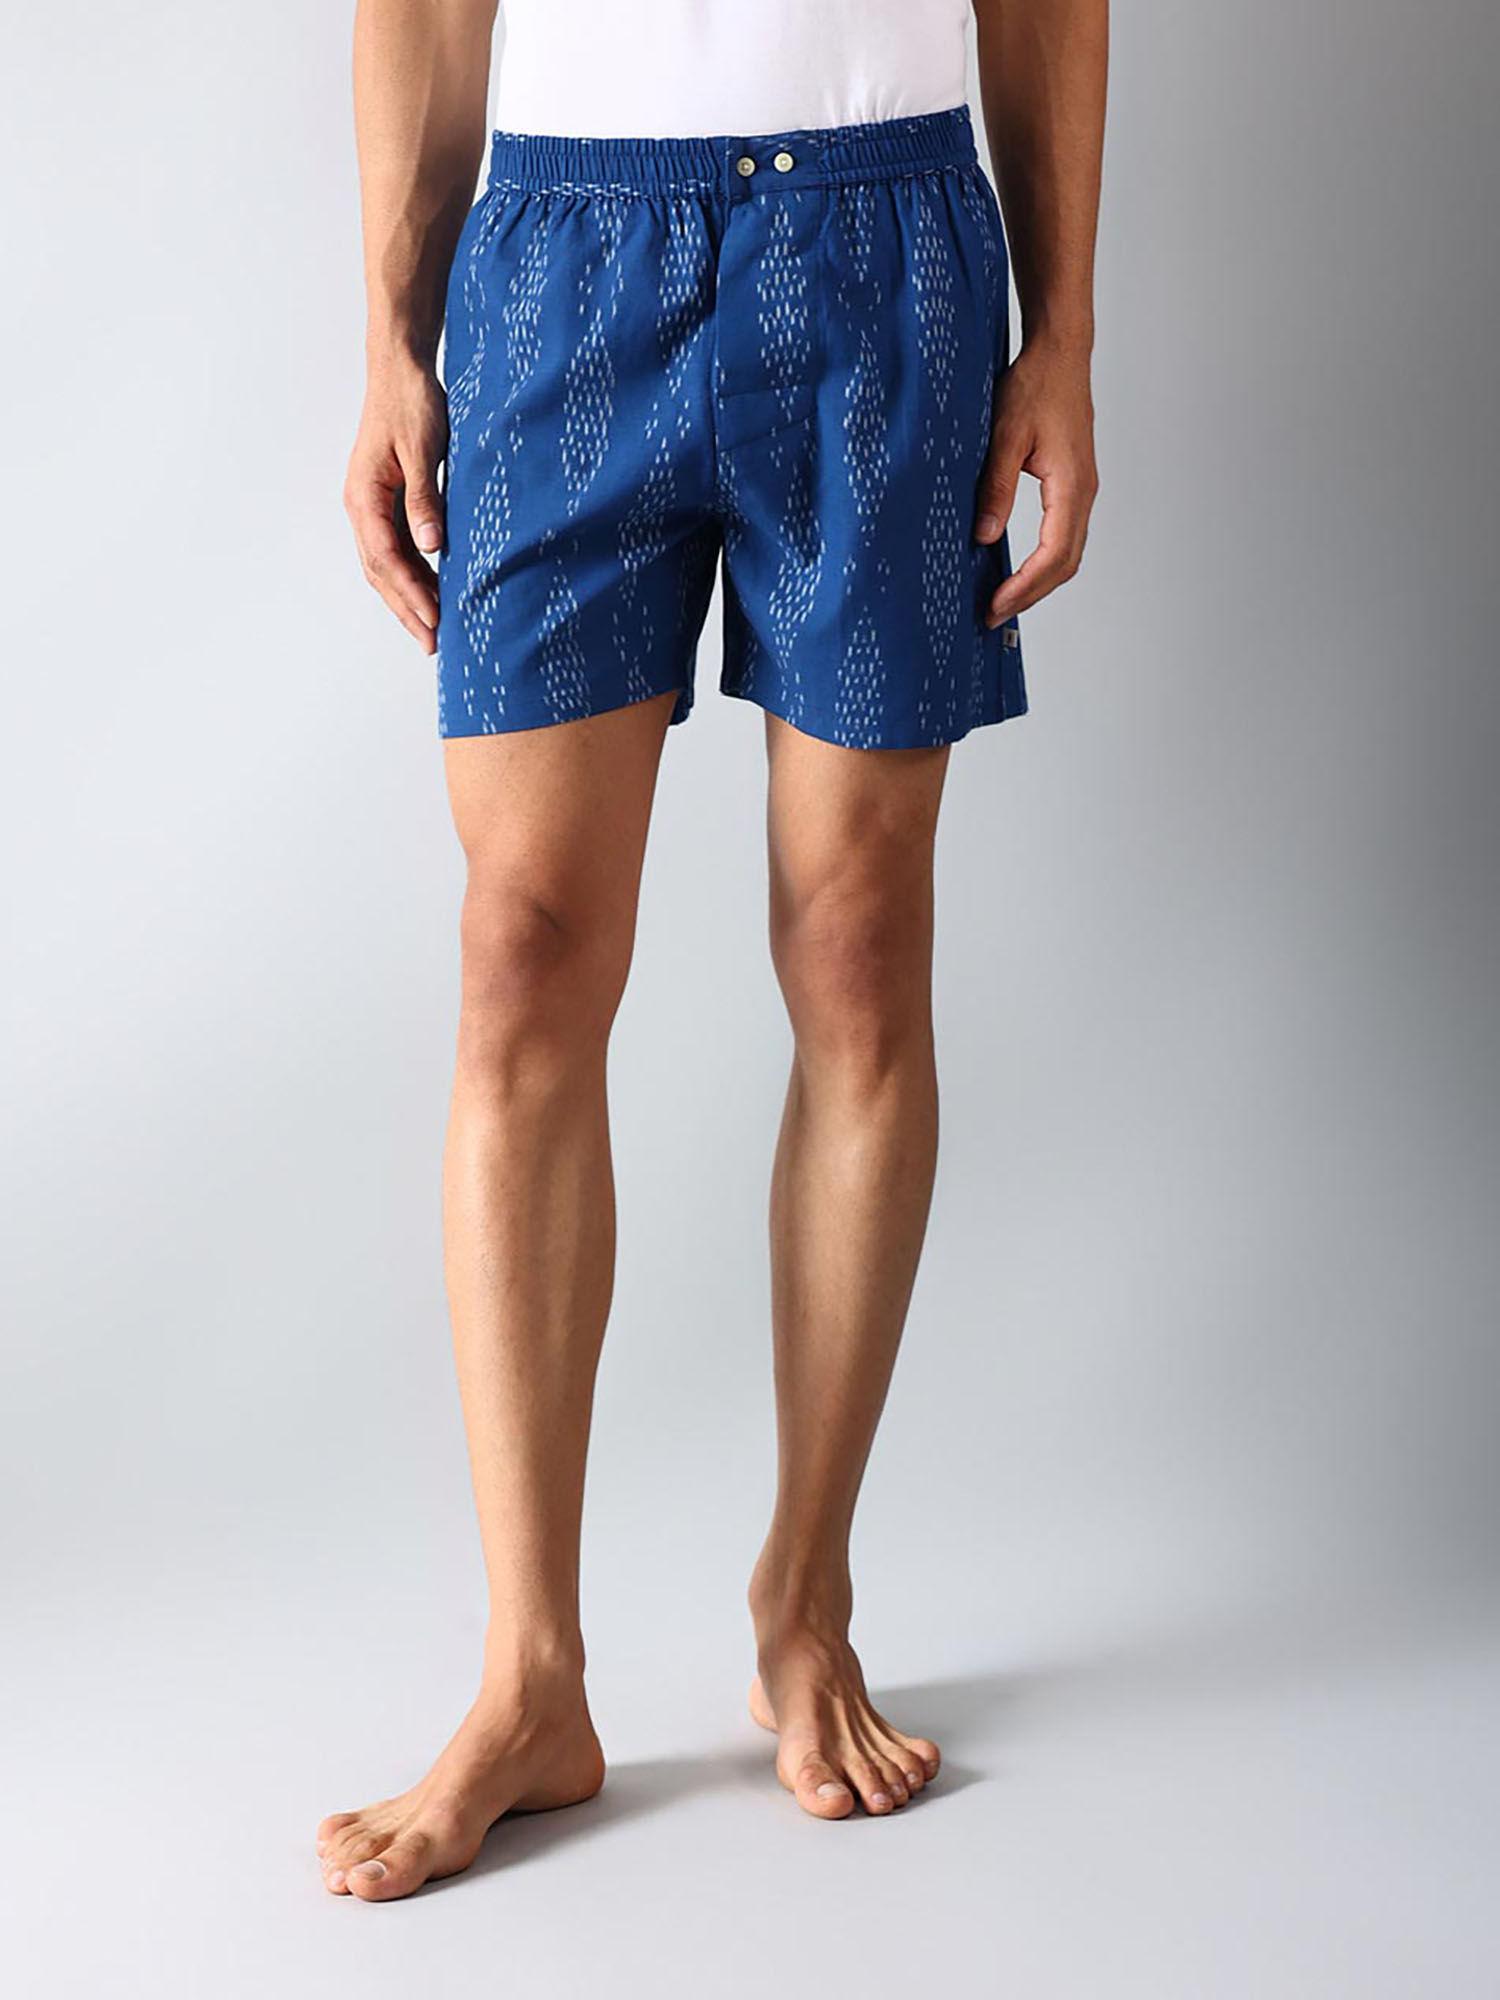 blue cotton ikat boxer shorts